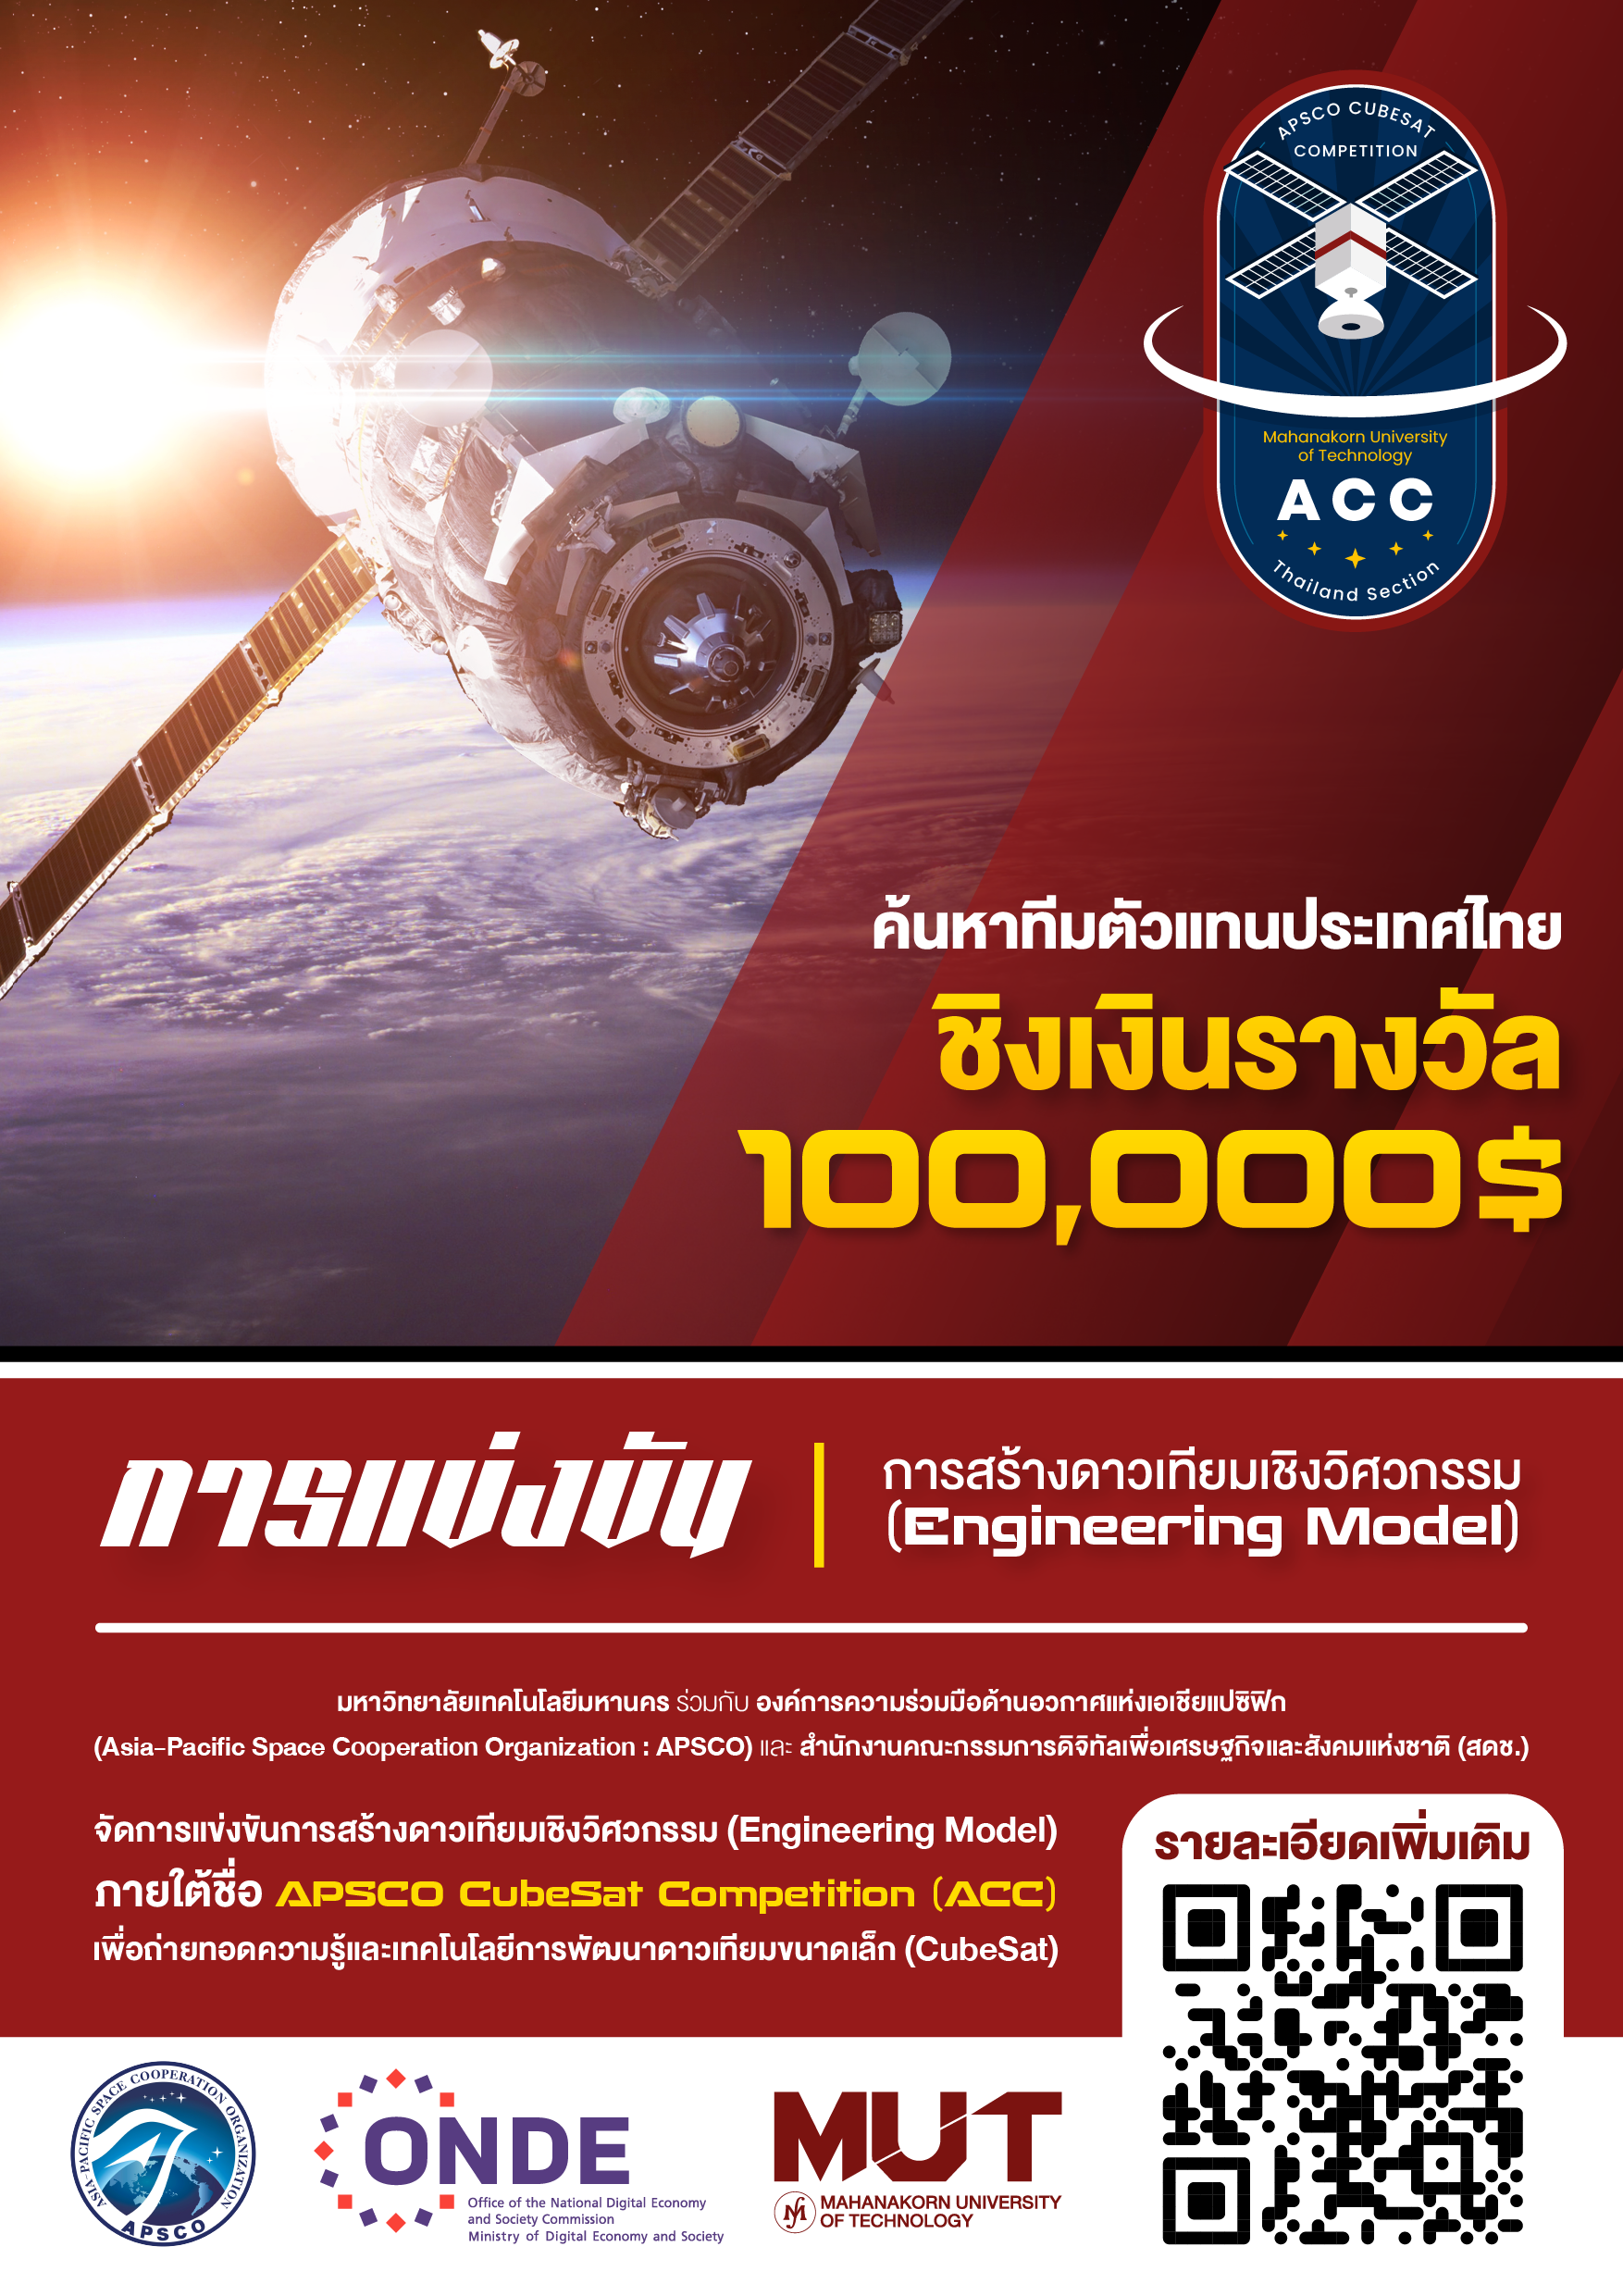 ประชาสัมพันธ์เชิญชวนเข้าร่วมกิจกรรม “เปิดโลกกิจกรรม ACC-Thailand” 